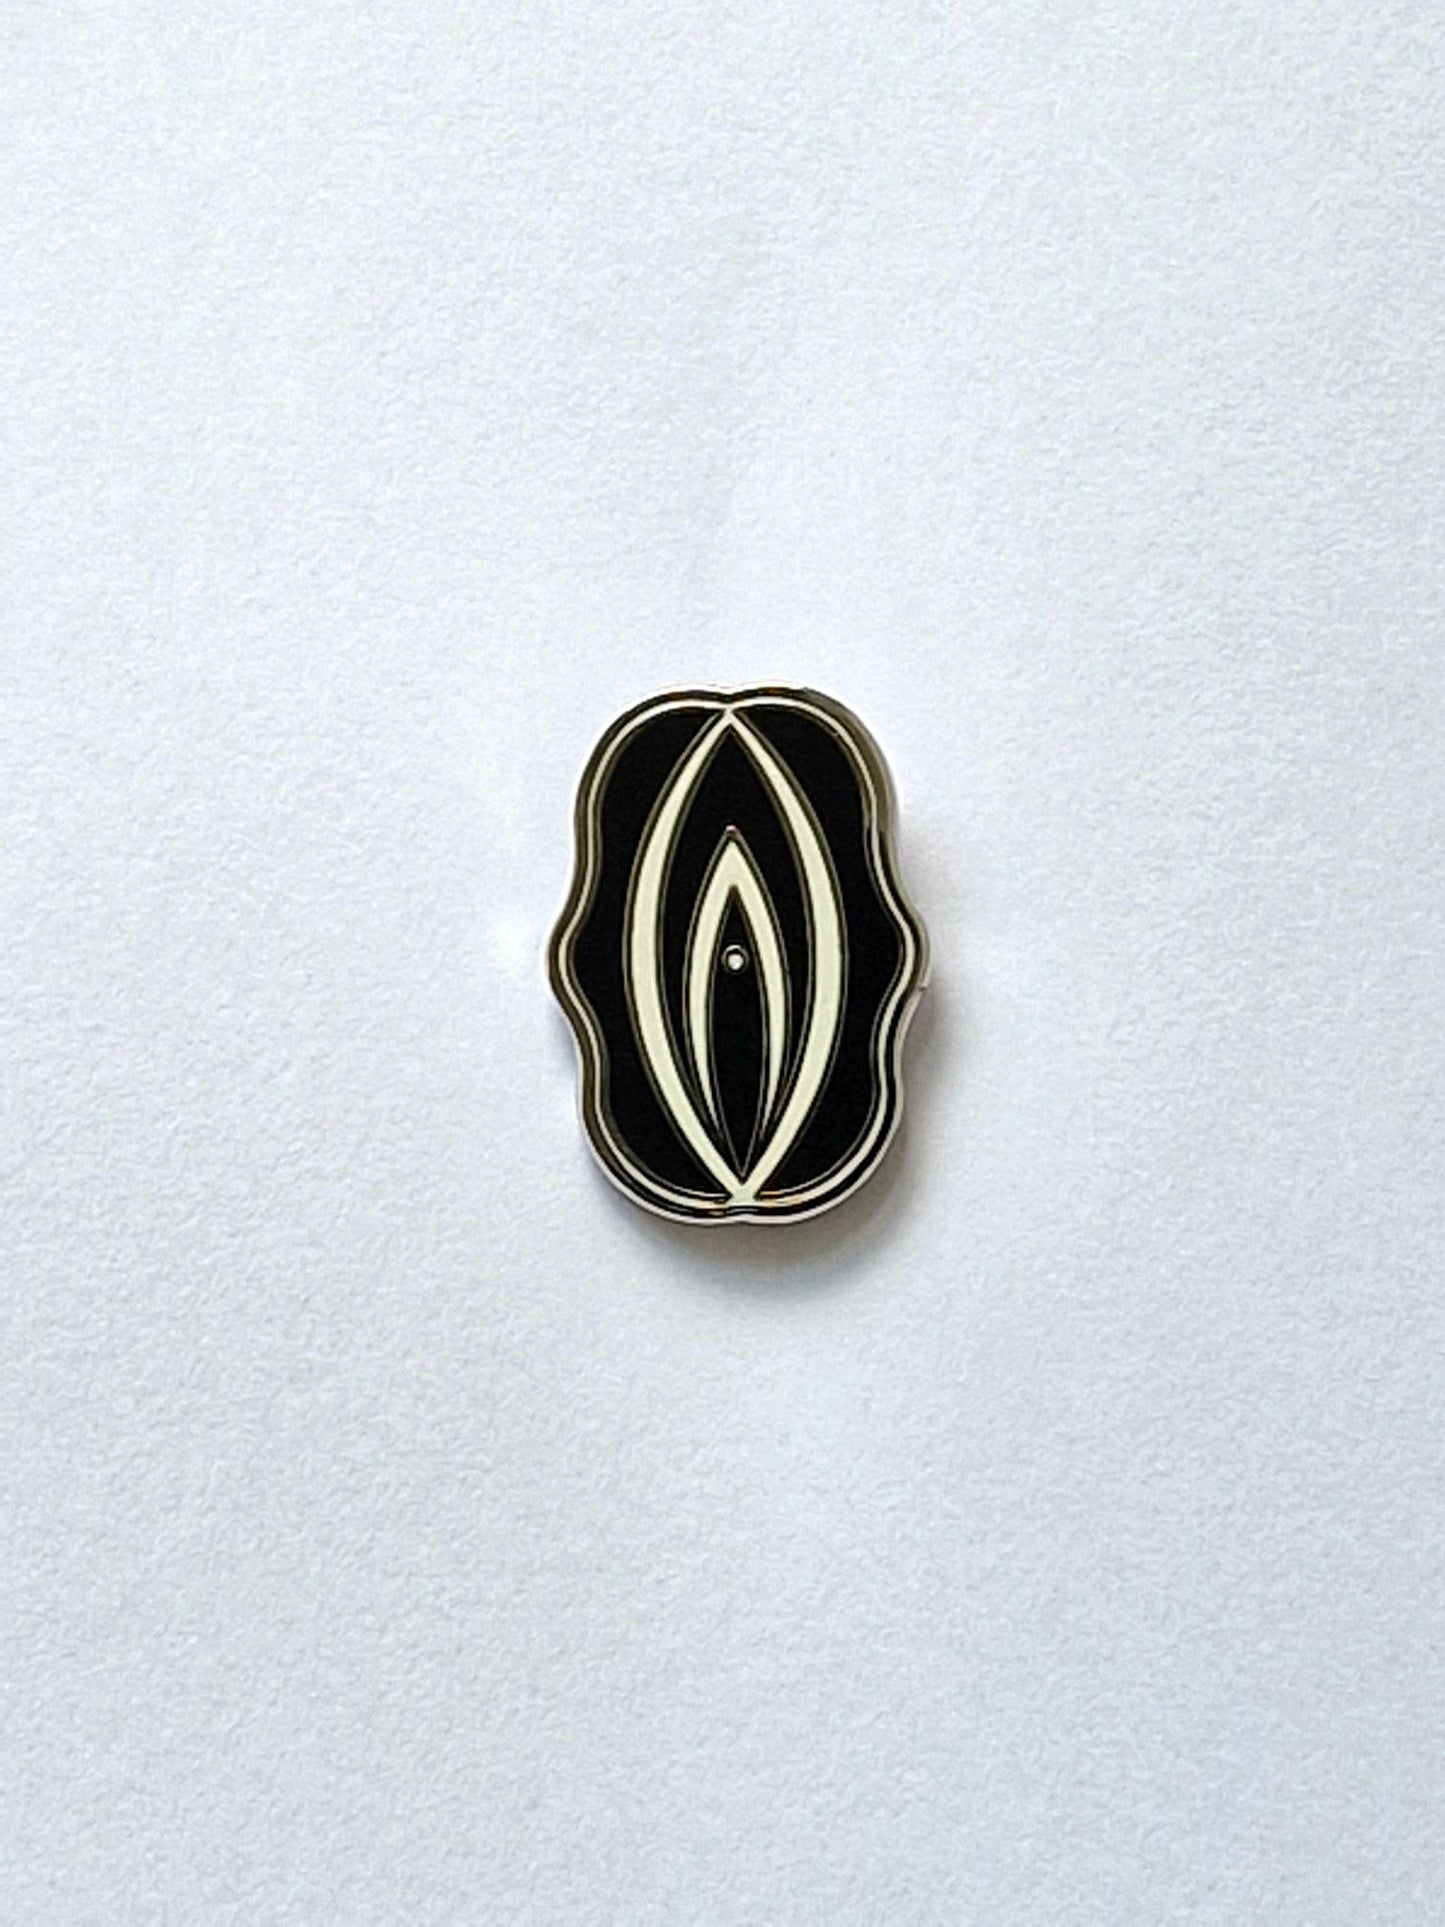 Kul och spännande pins formad som en silver och svartfärgad fiffi eller snippa